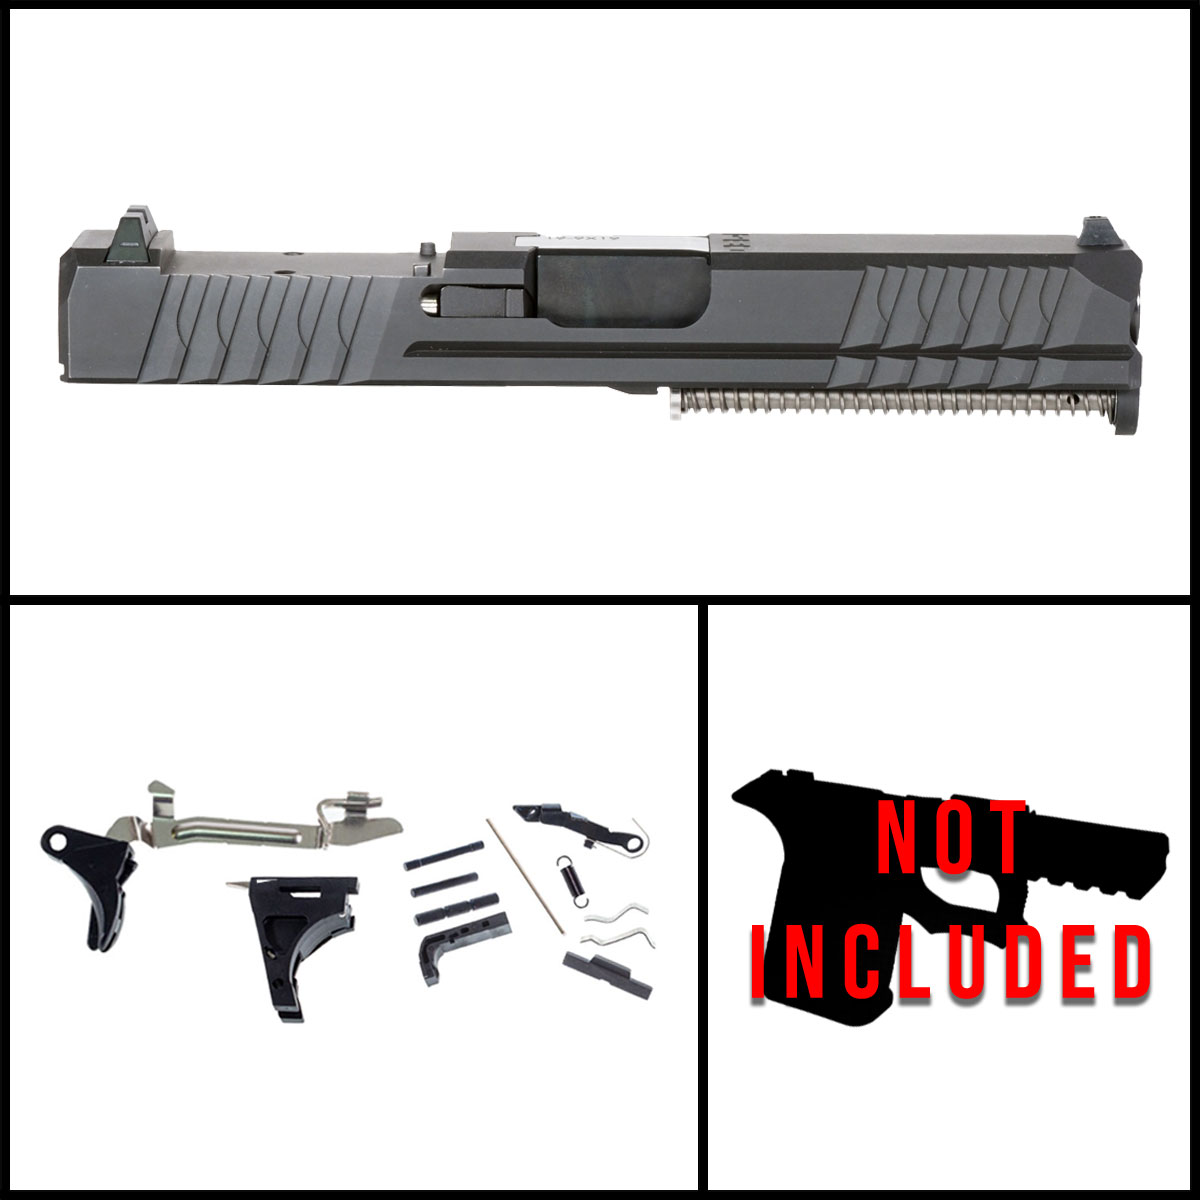 DTT 'Potassium' 9mm Complete Full Gun Kit - Glock 19 Gen 1-3 Compatible